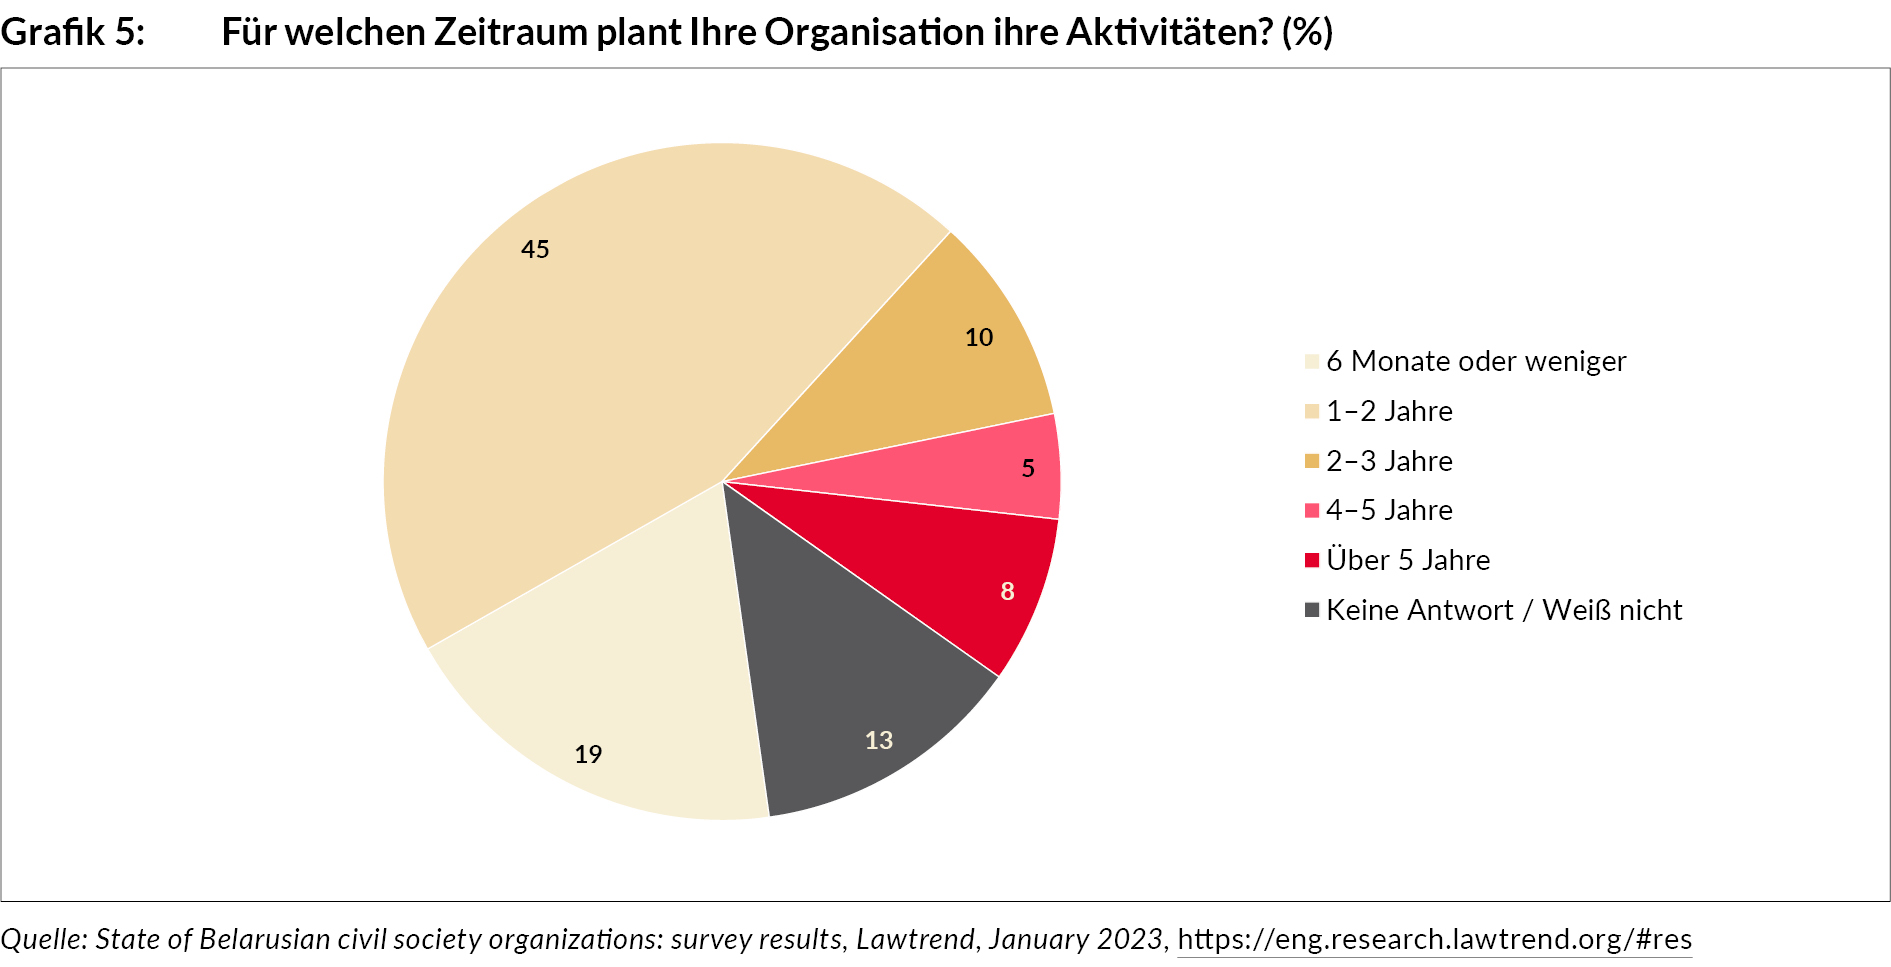 fuer_welchen_zeitraum_plant_ihre_organisation_ihre_aktivitaeten_grafik_ba69_5.jpg